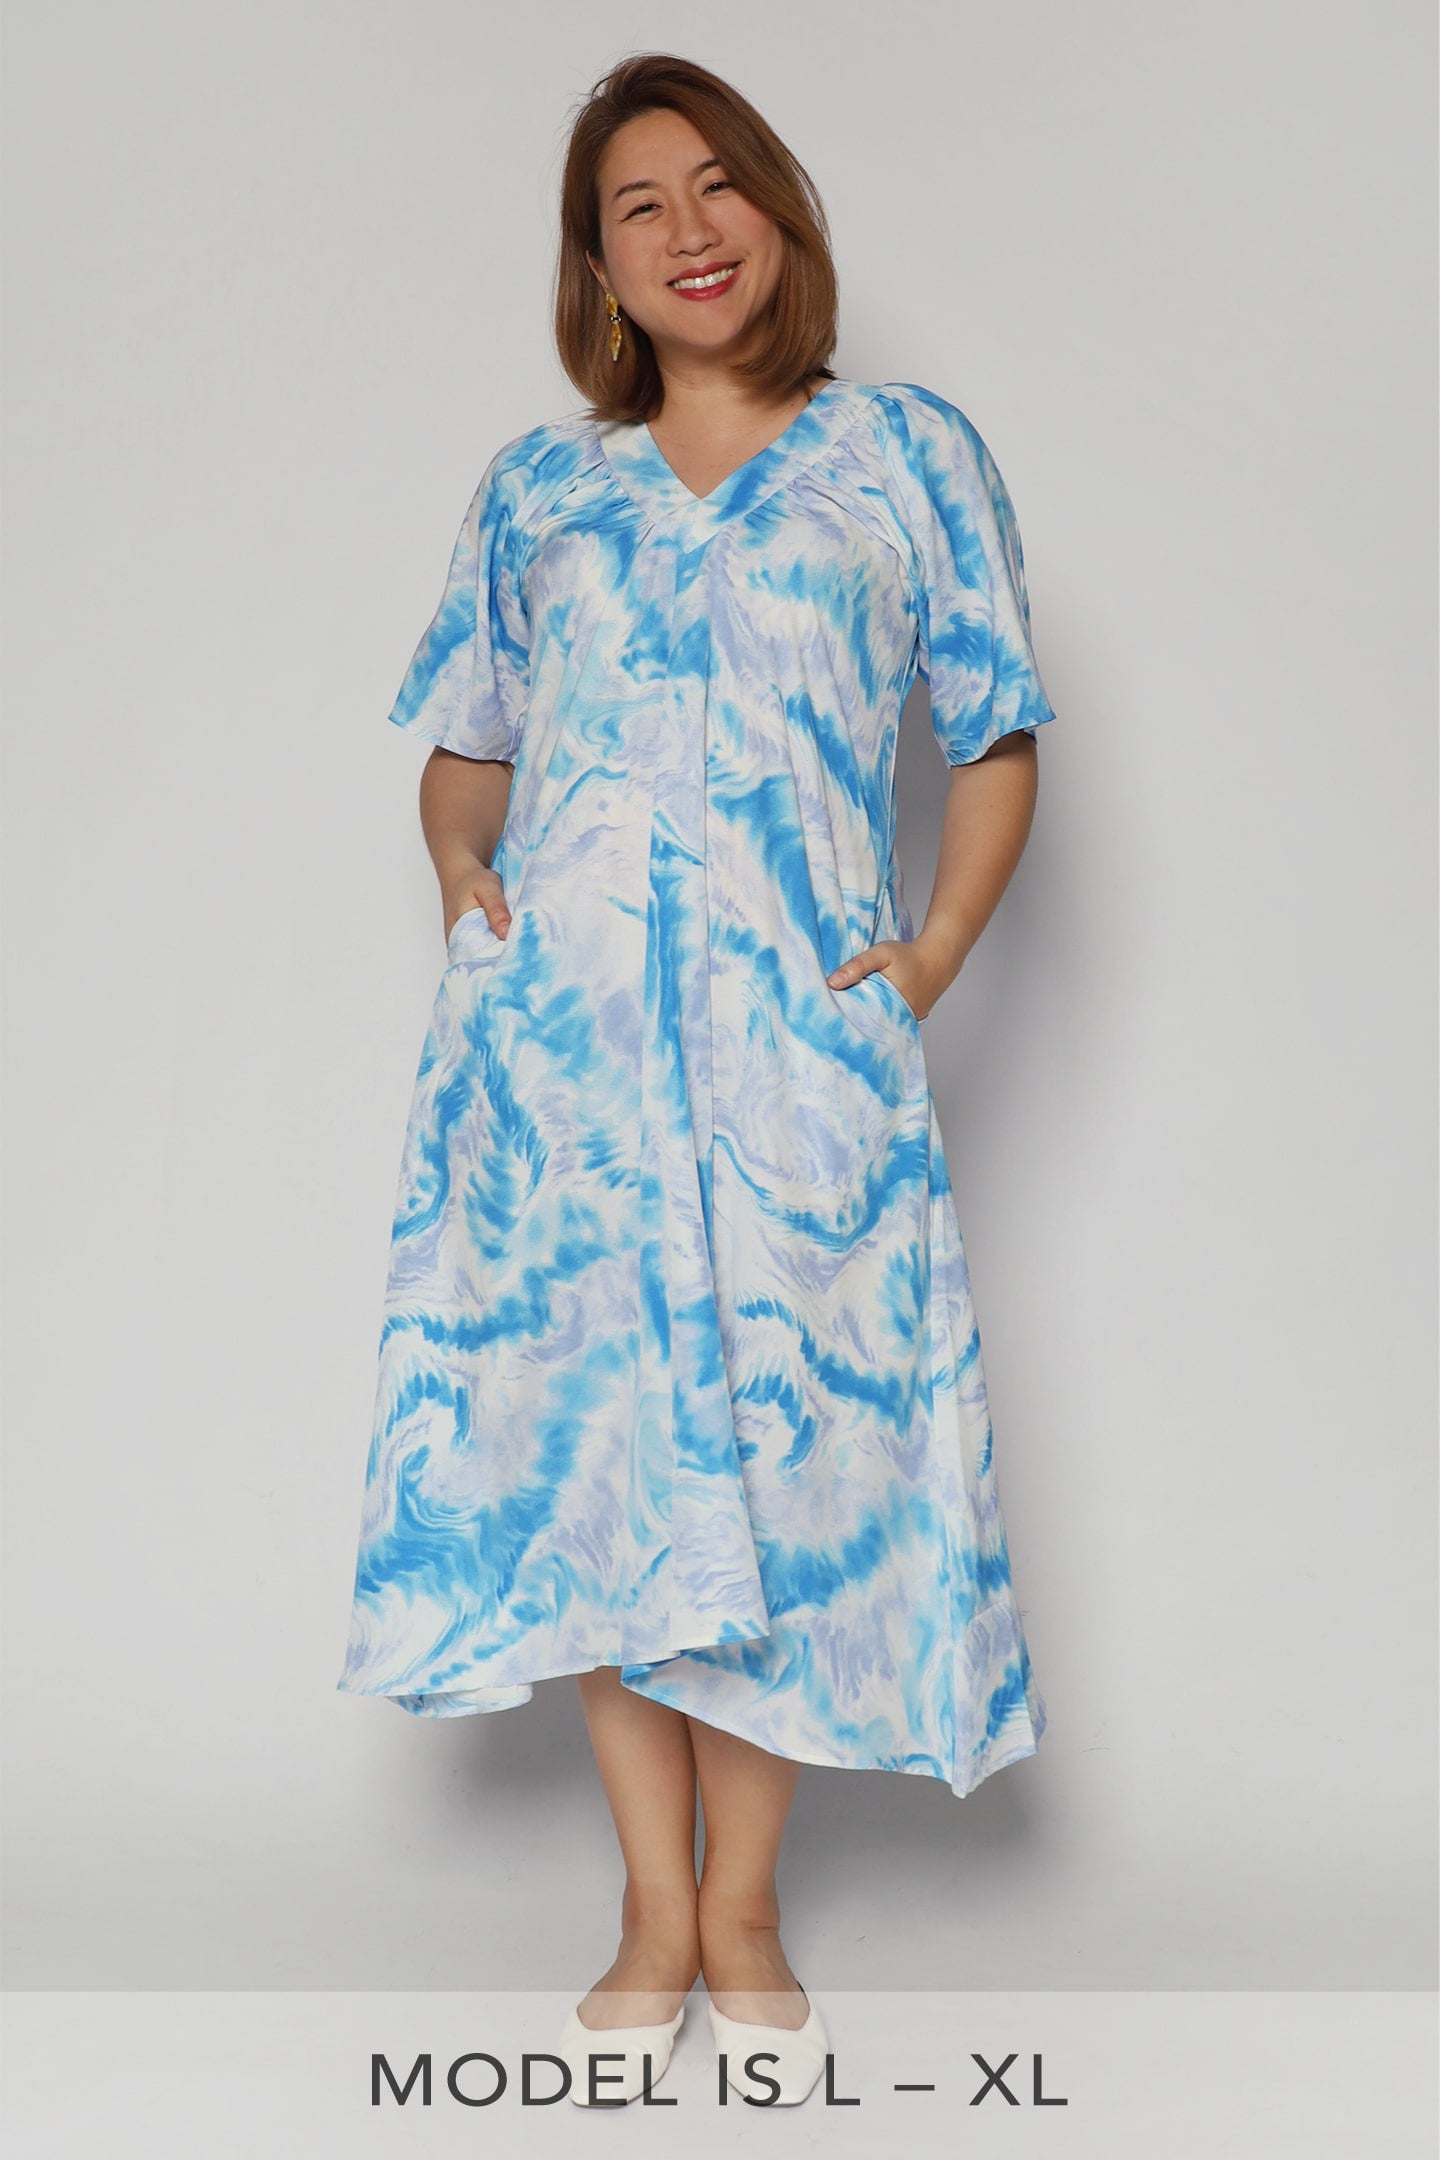 Whitney V Dress in Cloud Tie Dye